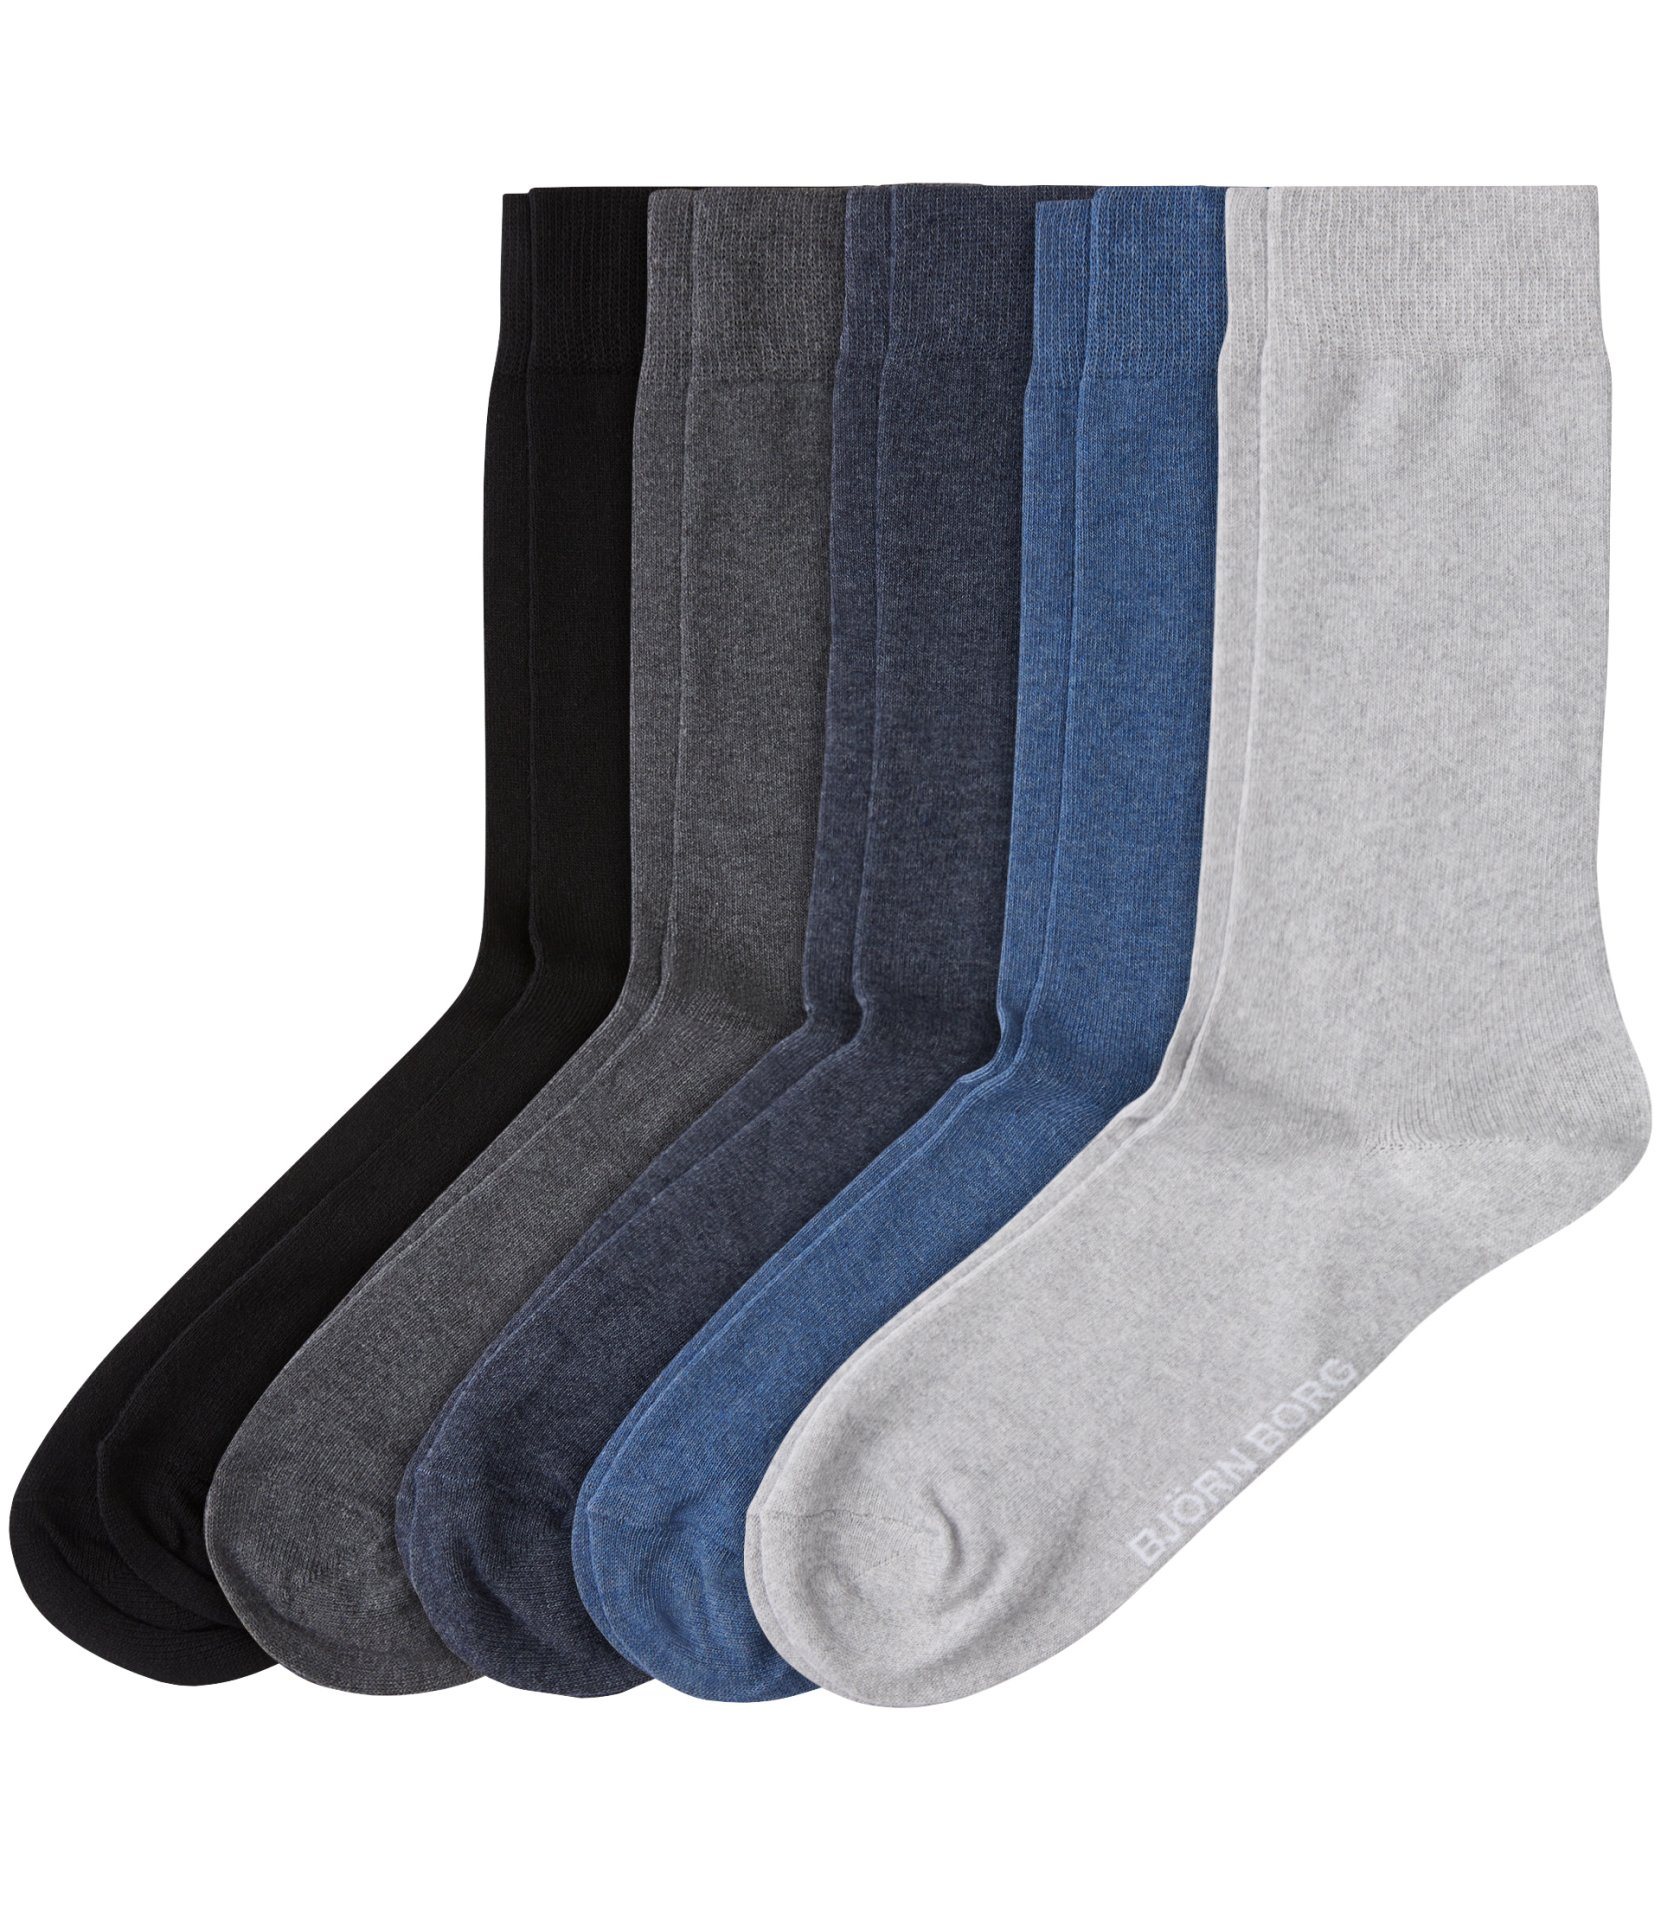 Ανδρικά/Αξεσουάρ/Κάλτσες BJORN BORG - Ανδρικές κάλτσες σετ 5 ζευγάρια BJORN BORG μπλε-γκρι